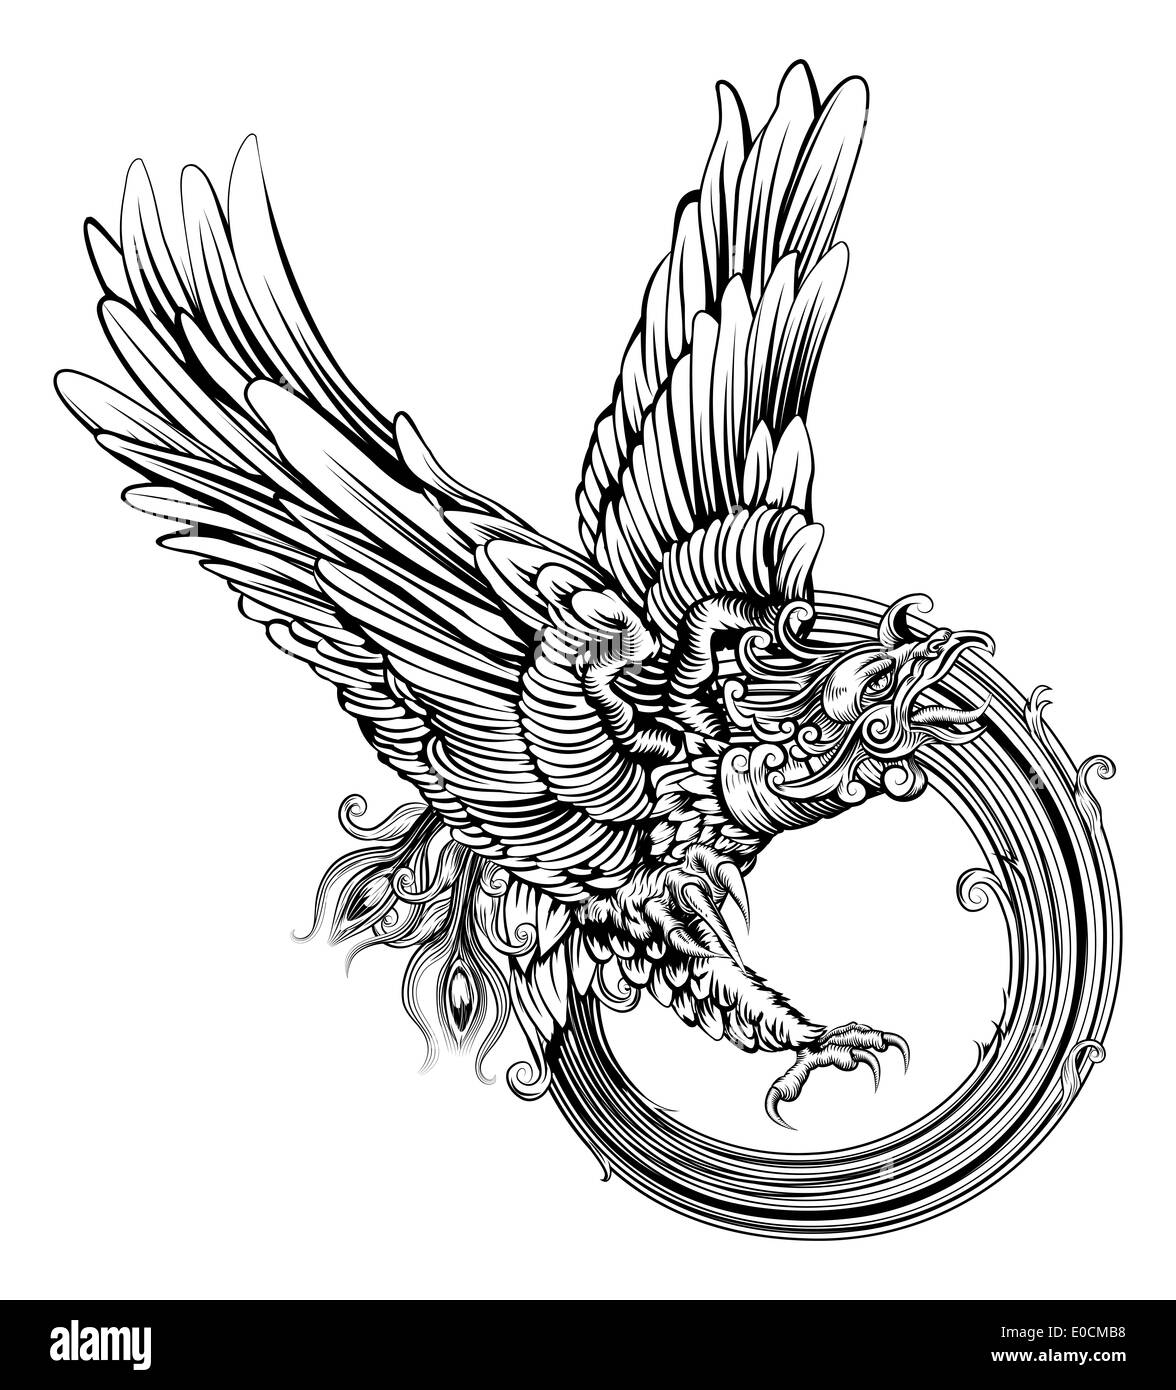 Una ilustración original de la legendaria ave fénix o un águila en un dinámico estilo de xilografía Foto de stock